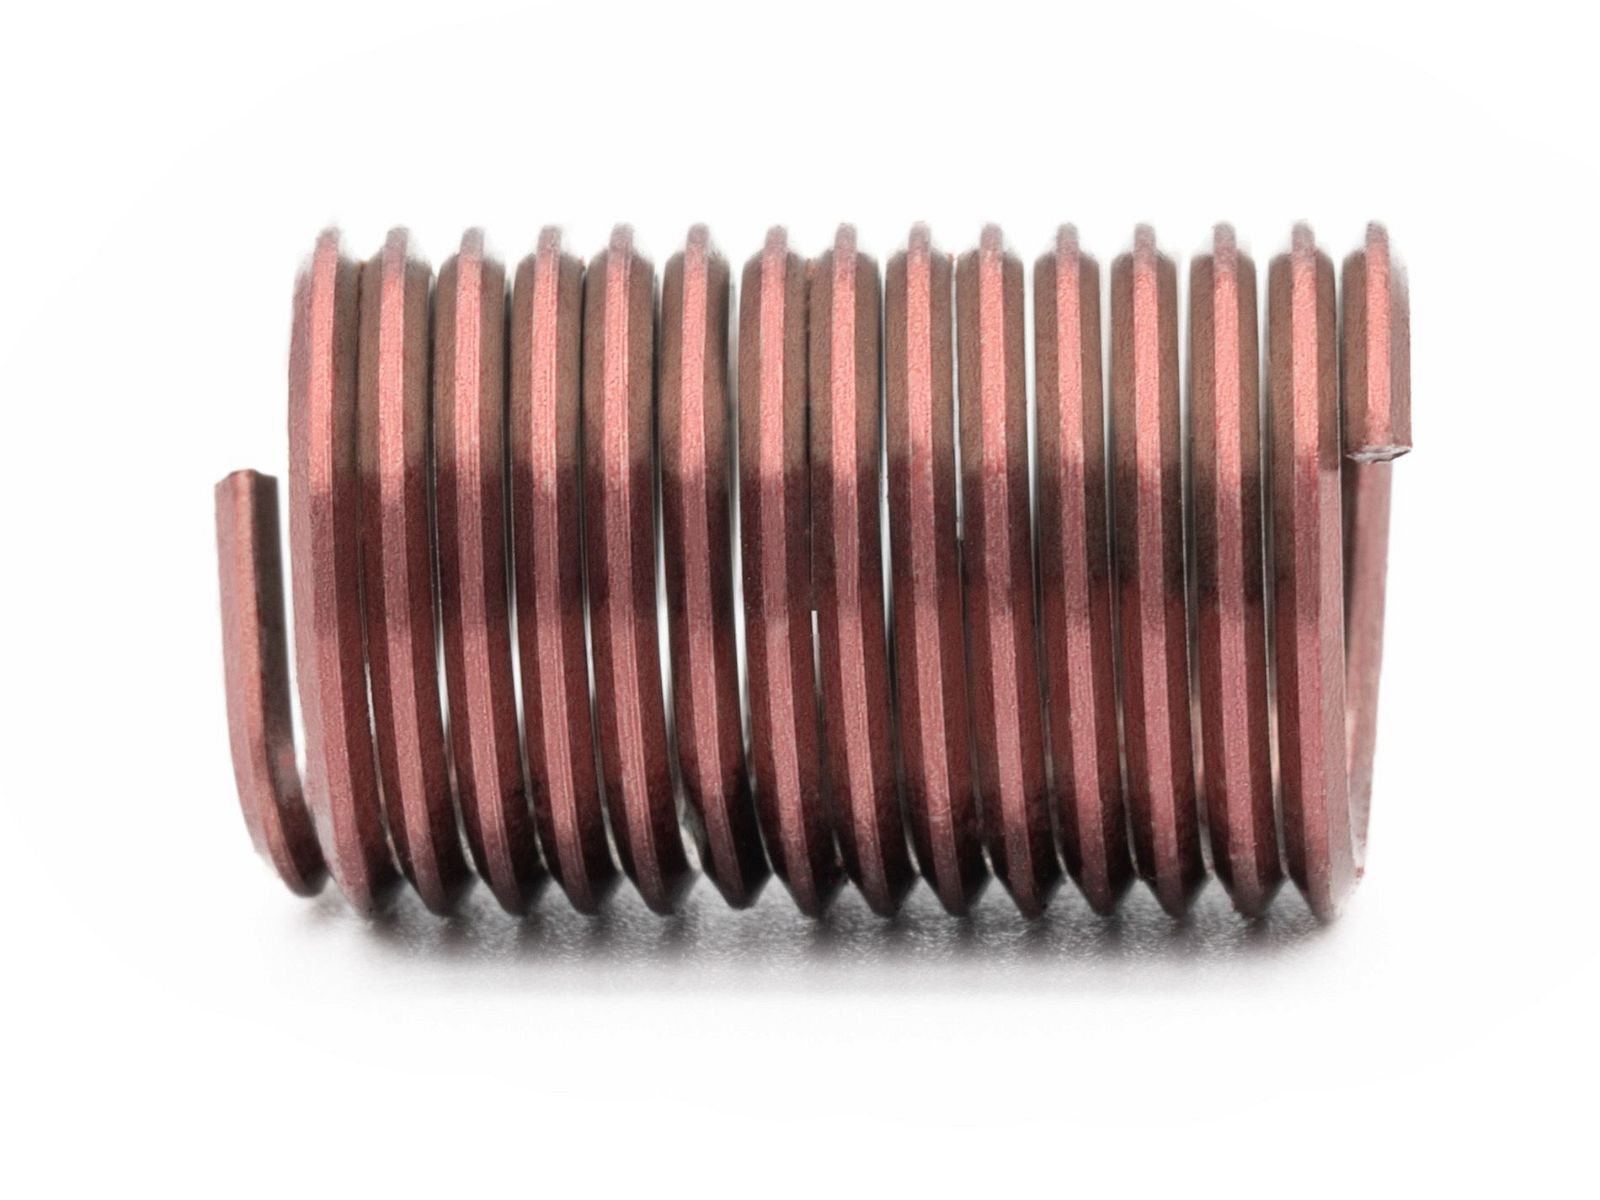 BaerCoil Wire Thread Inserts UNF 7/16 x 20 - 2.5 D (27.78 mm) - screw grip (screw locking) - 100 pcs.